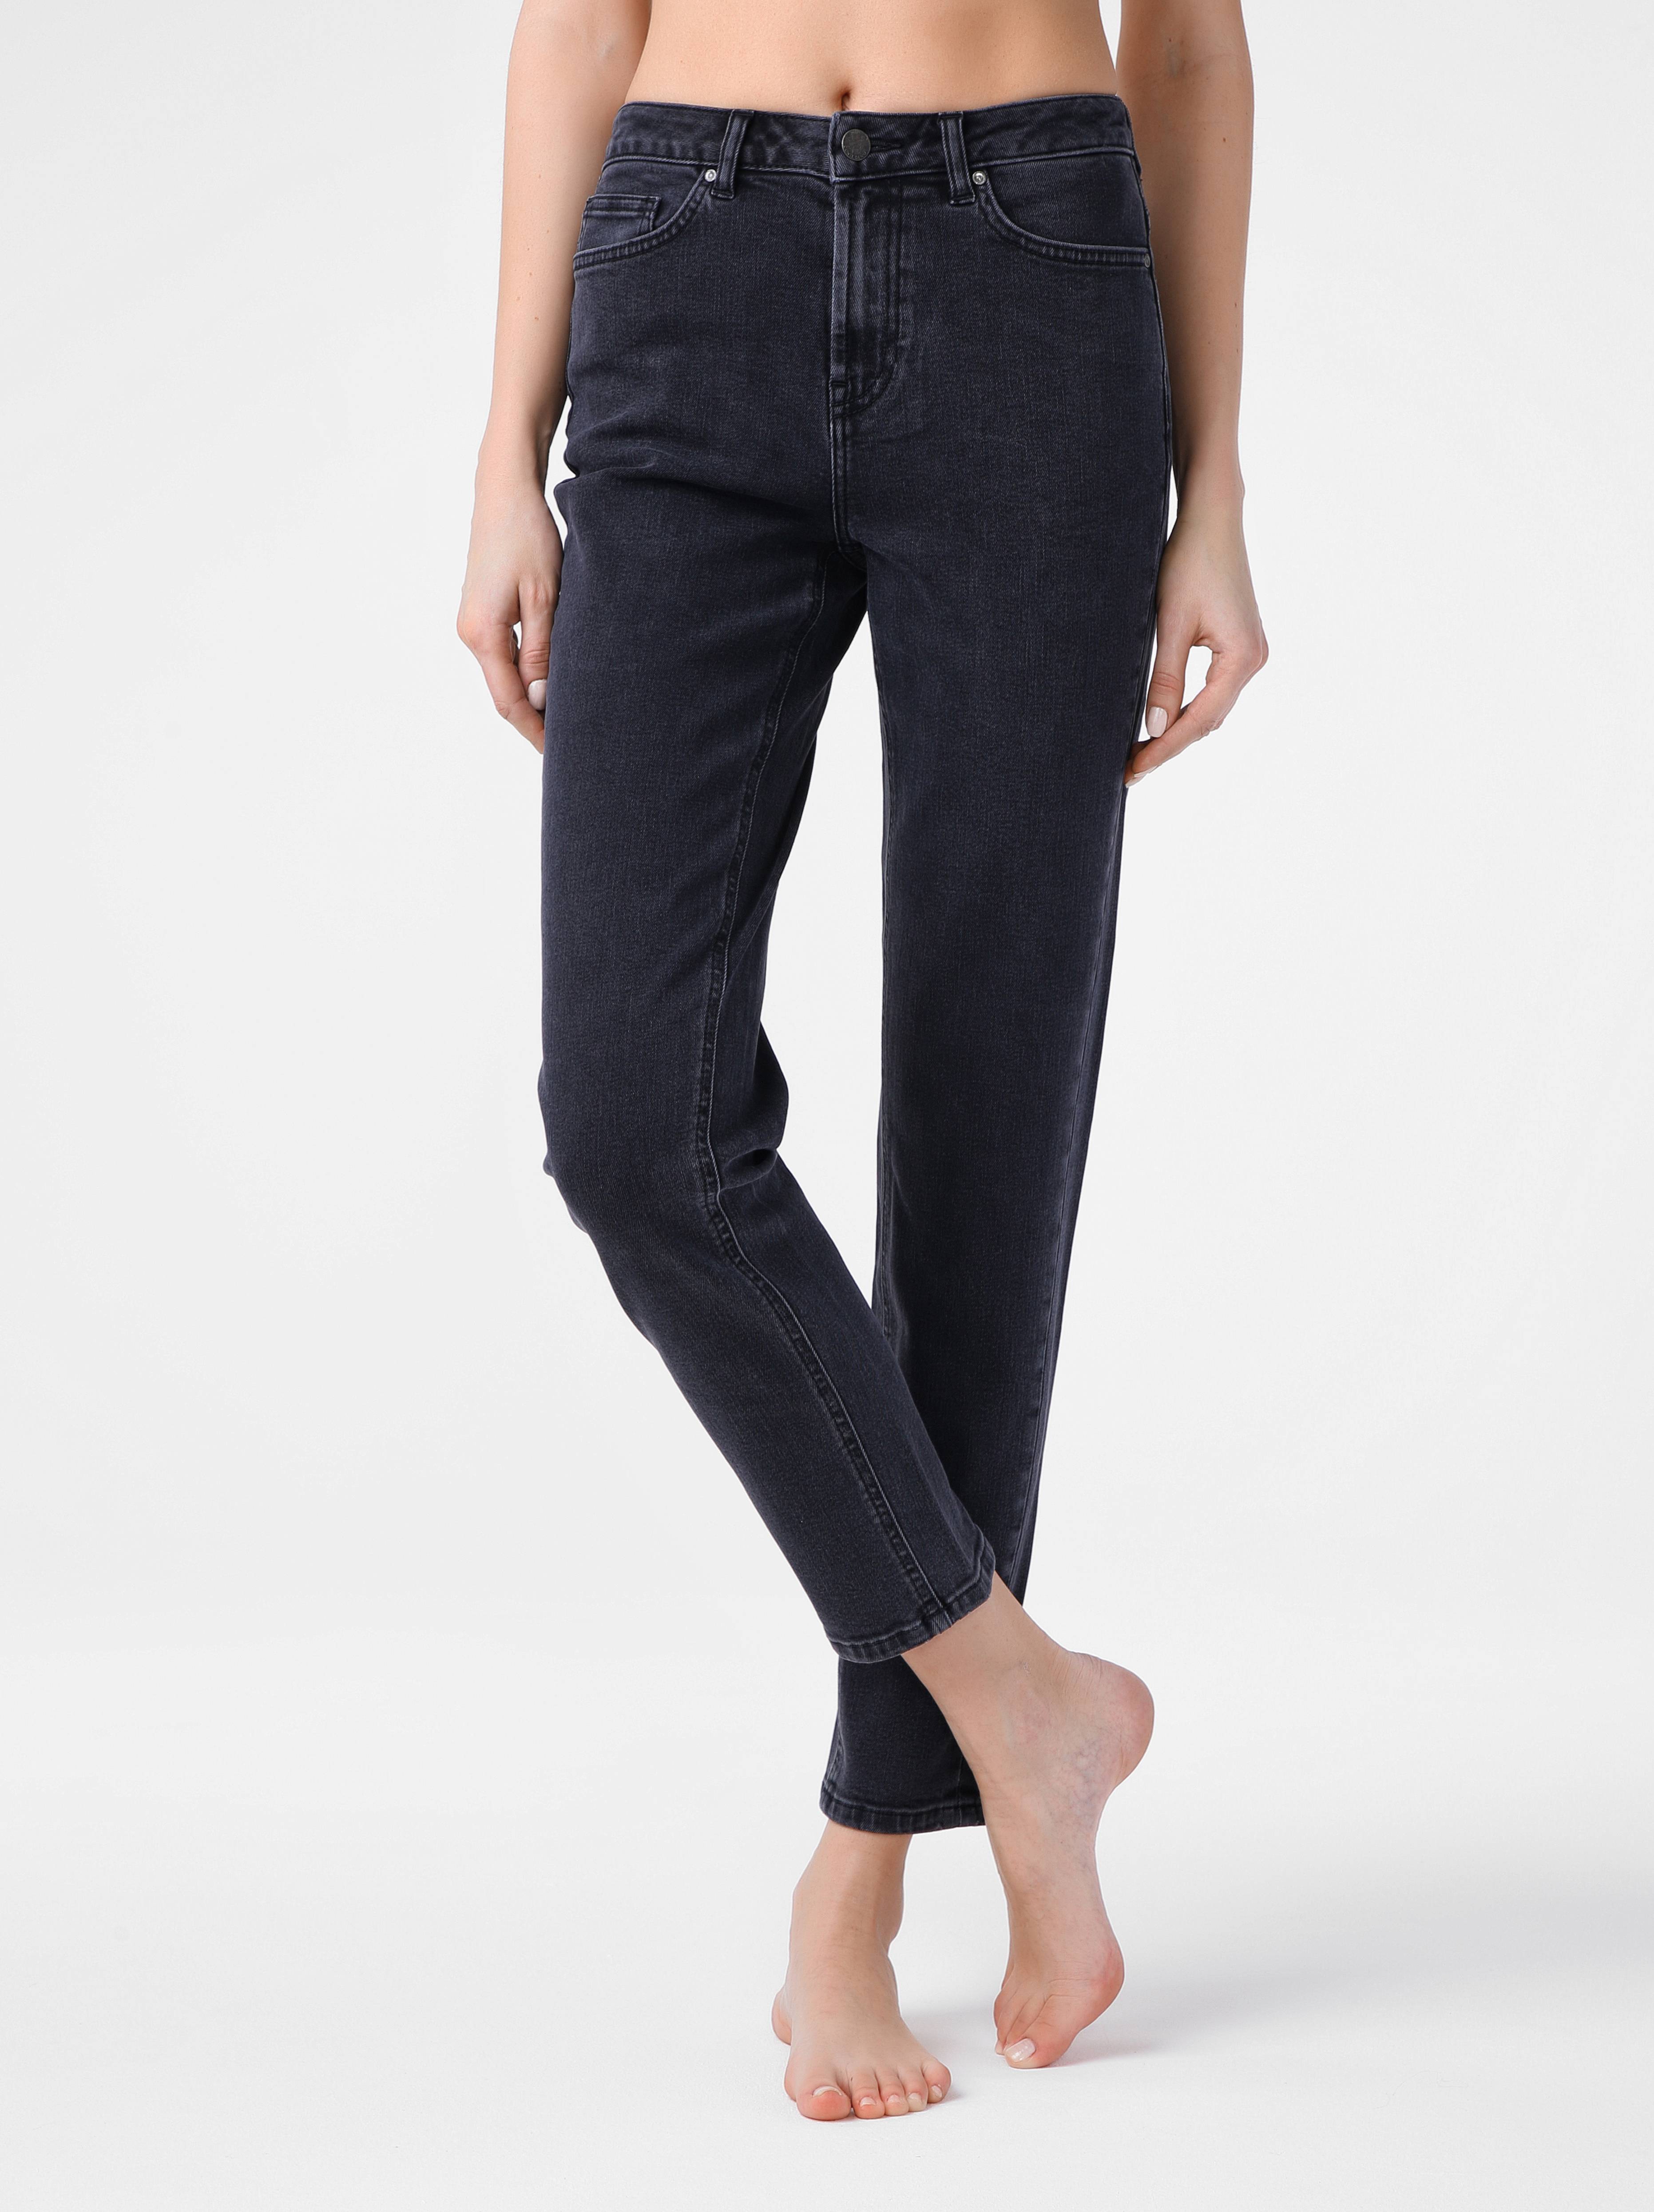 Eco-friendly джинсы Relaxed Mom с высокой посадкой CON-137B Conte ⭐️, цвет washed black, размер 164-102 - фото 1